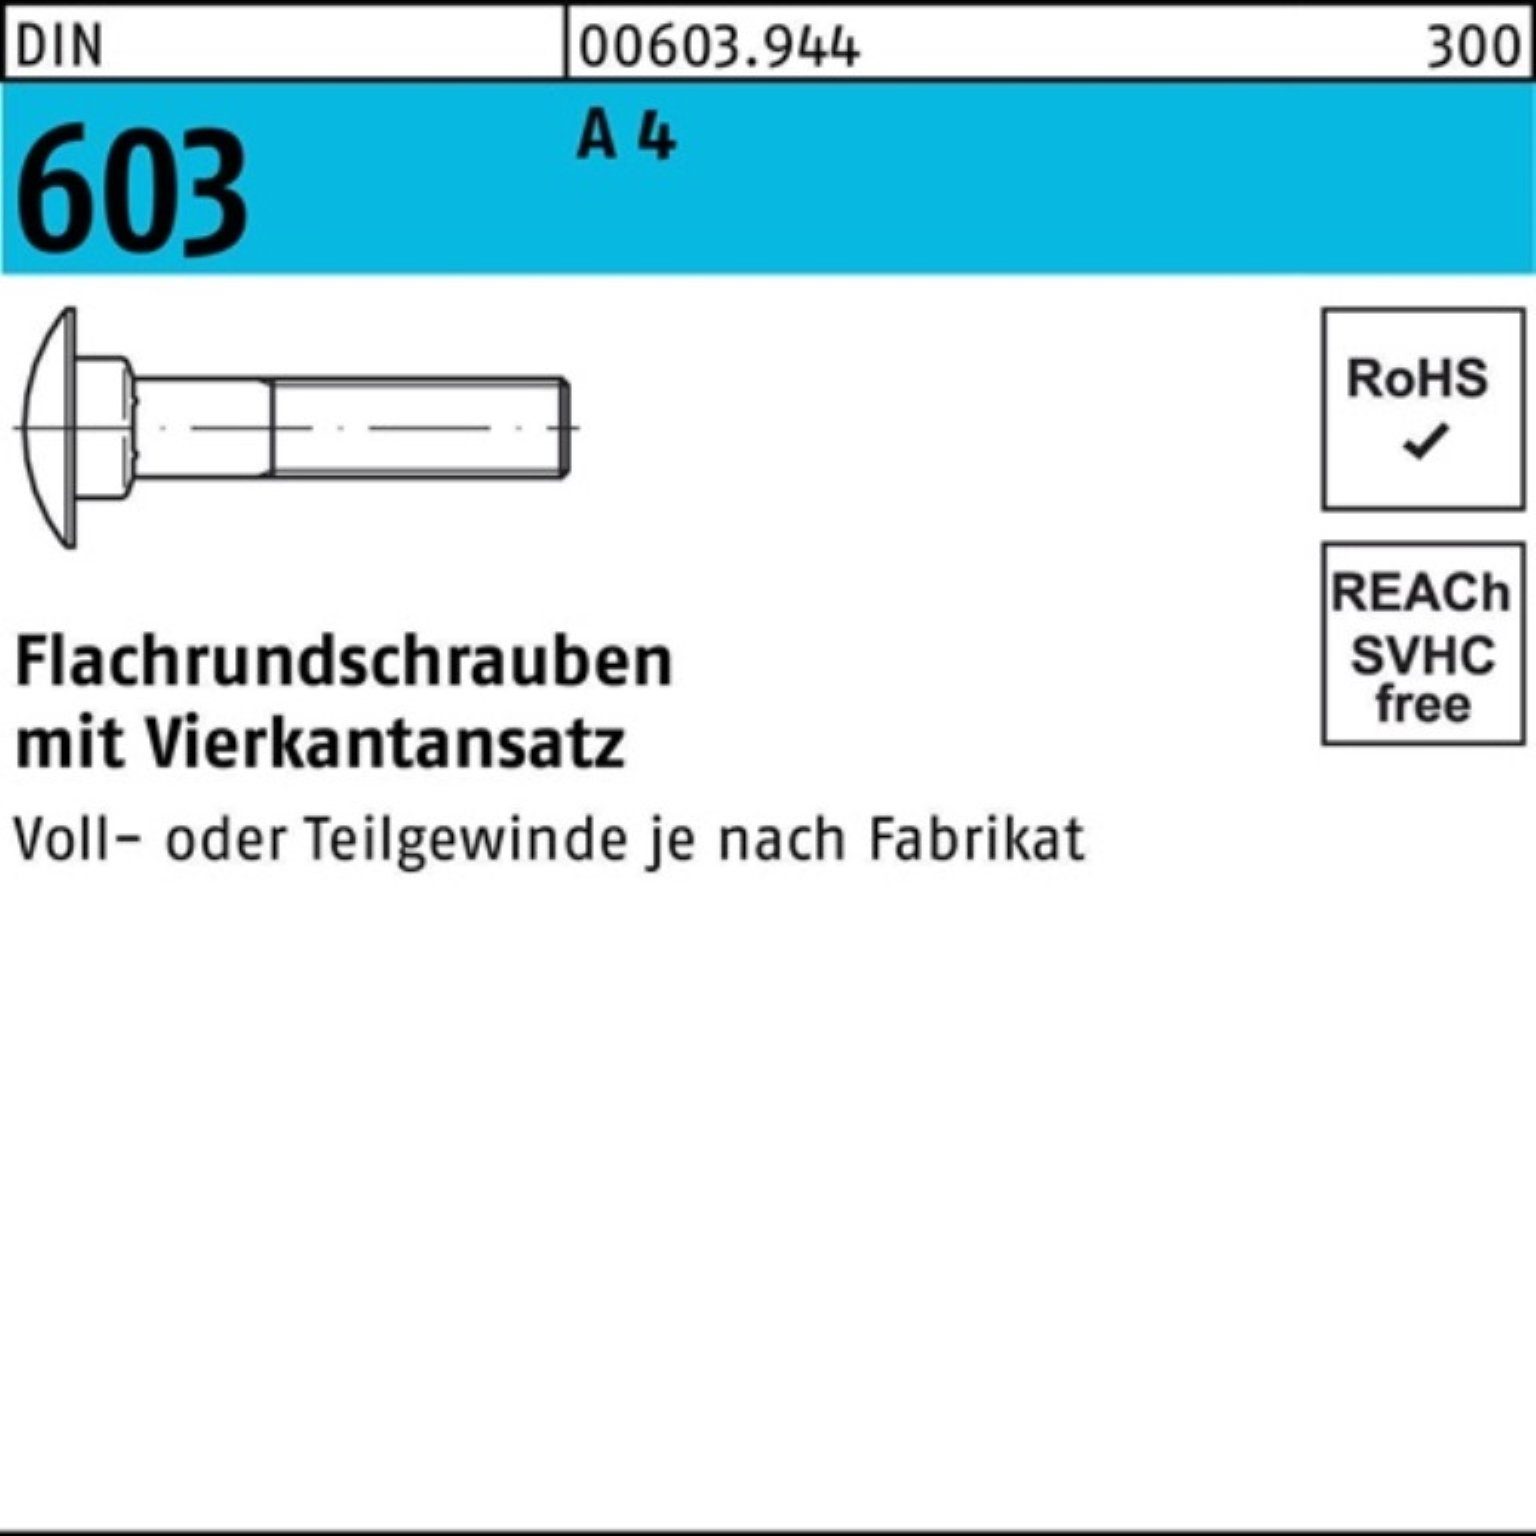 Reyher Schraube 100er Pack DIN Flachrundschraube 4 25 A 603 35 M6x Vierkantansatz Stü